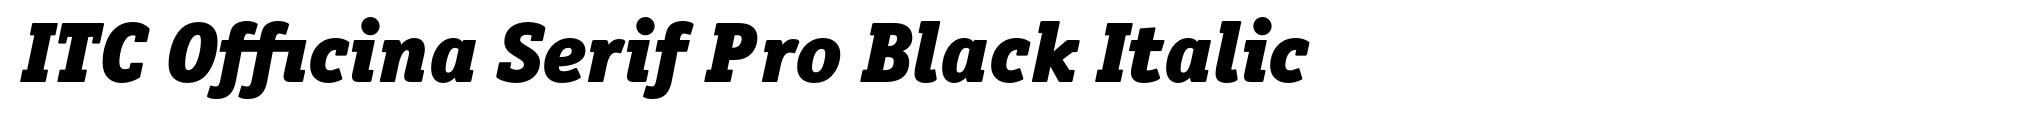 ITC Officina Serif Pro Black Italic image